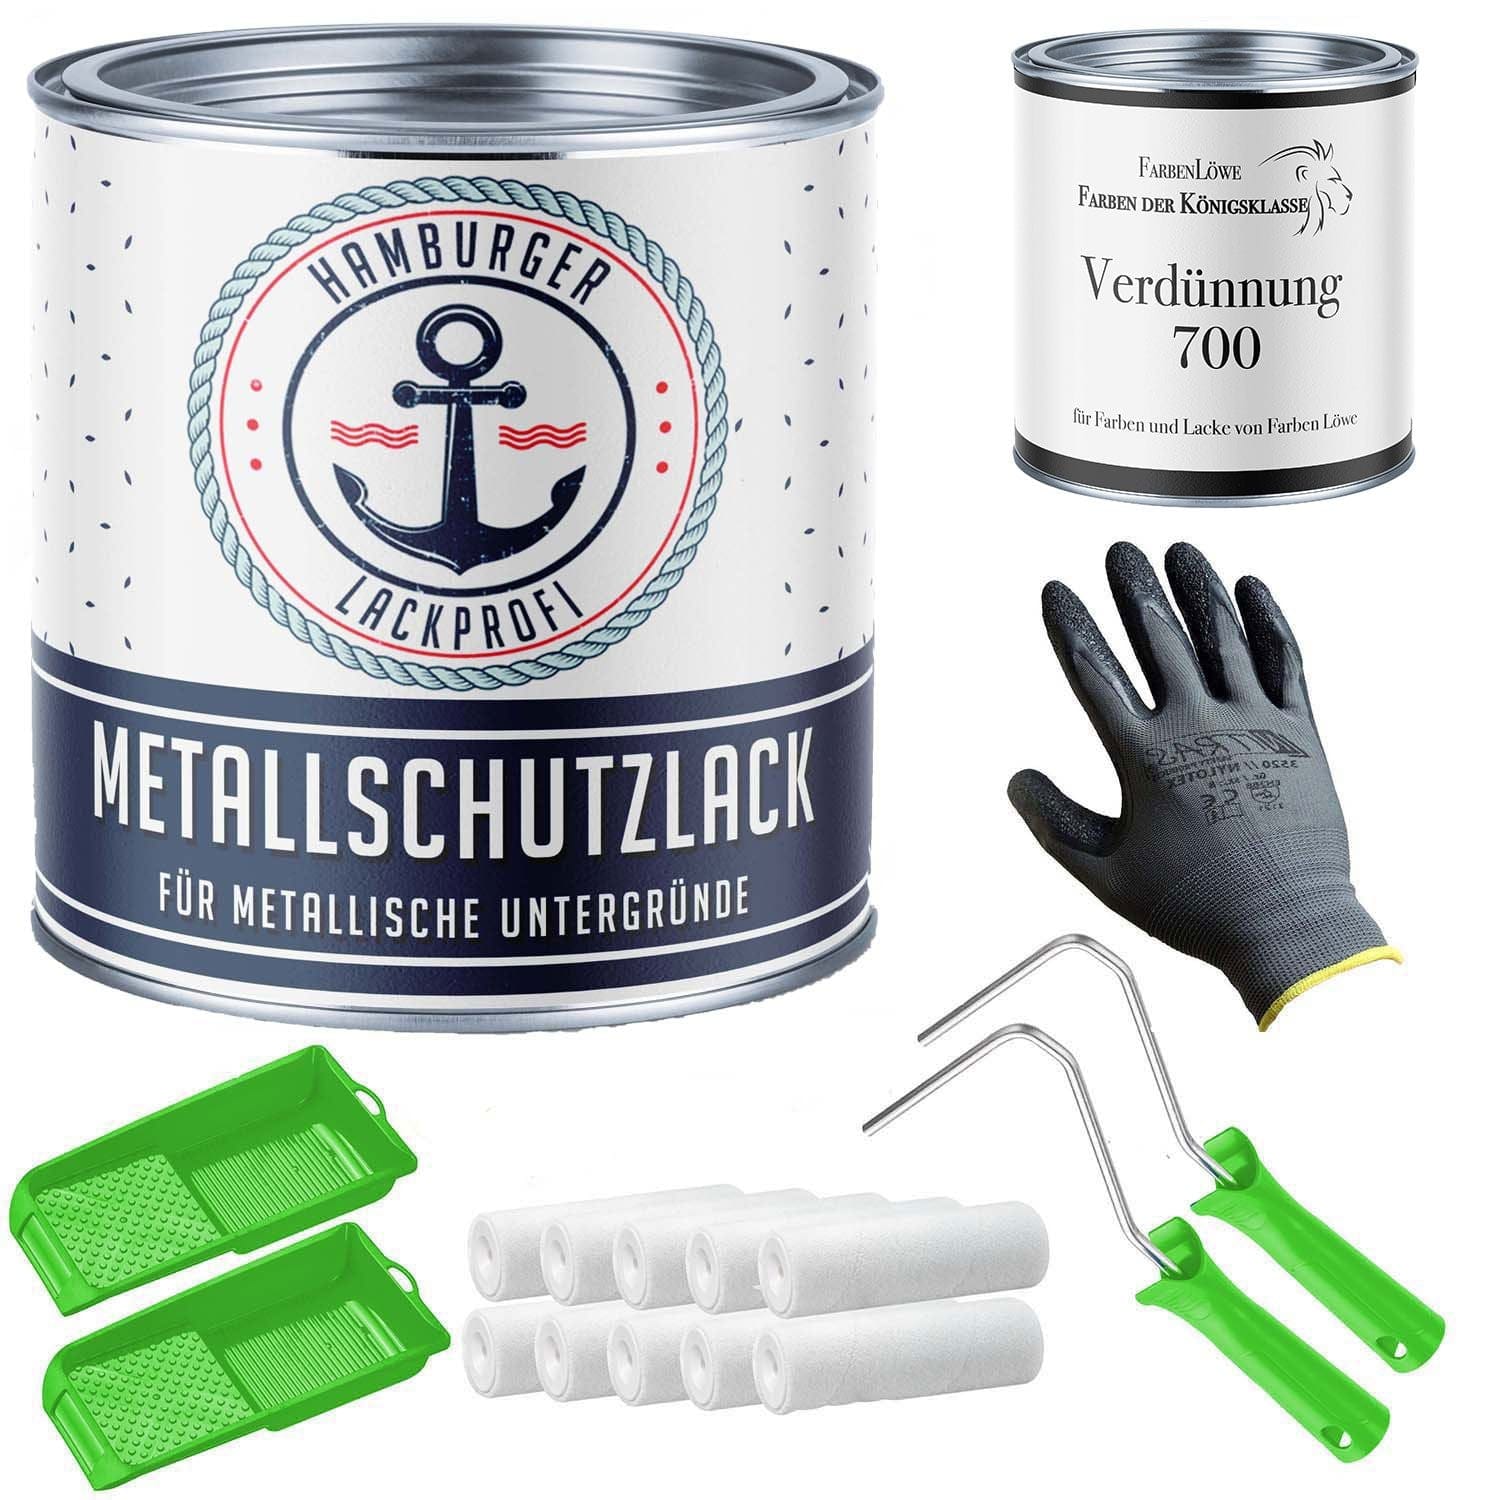 FARBENLÖWE Lacke & Beschichtungen Hamburger Lack-Profi Metallschutzlack in Schwarzgrün RAL 6012 mit Lackierset (X300) & Verdünnung (1 L) - 30% Sparangebot